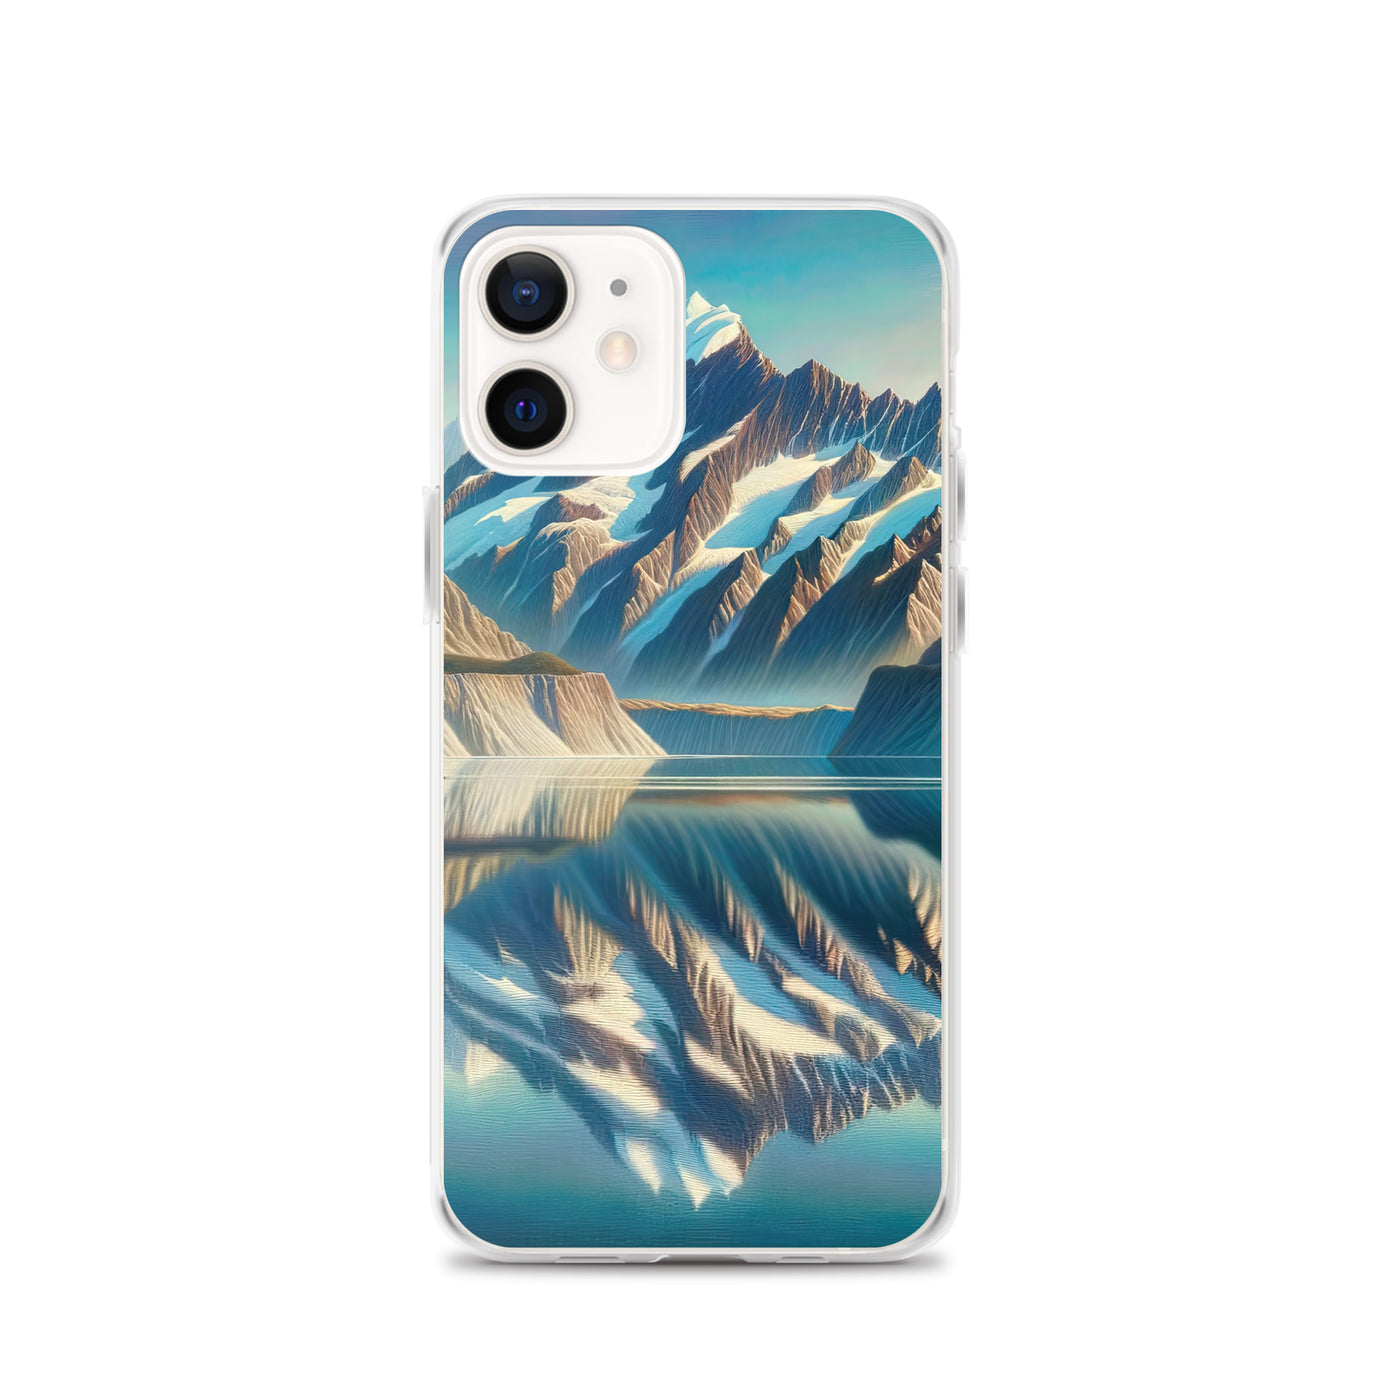 Ölgemälde eines unberührten Sees, der die Bergkette spiegelt - iPhone Schutzhülle (durchsichtig) berge xxx yyy zzz iPhone 12